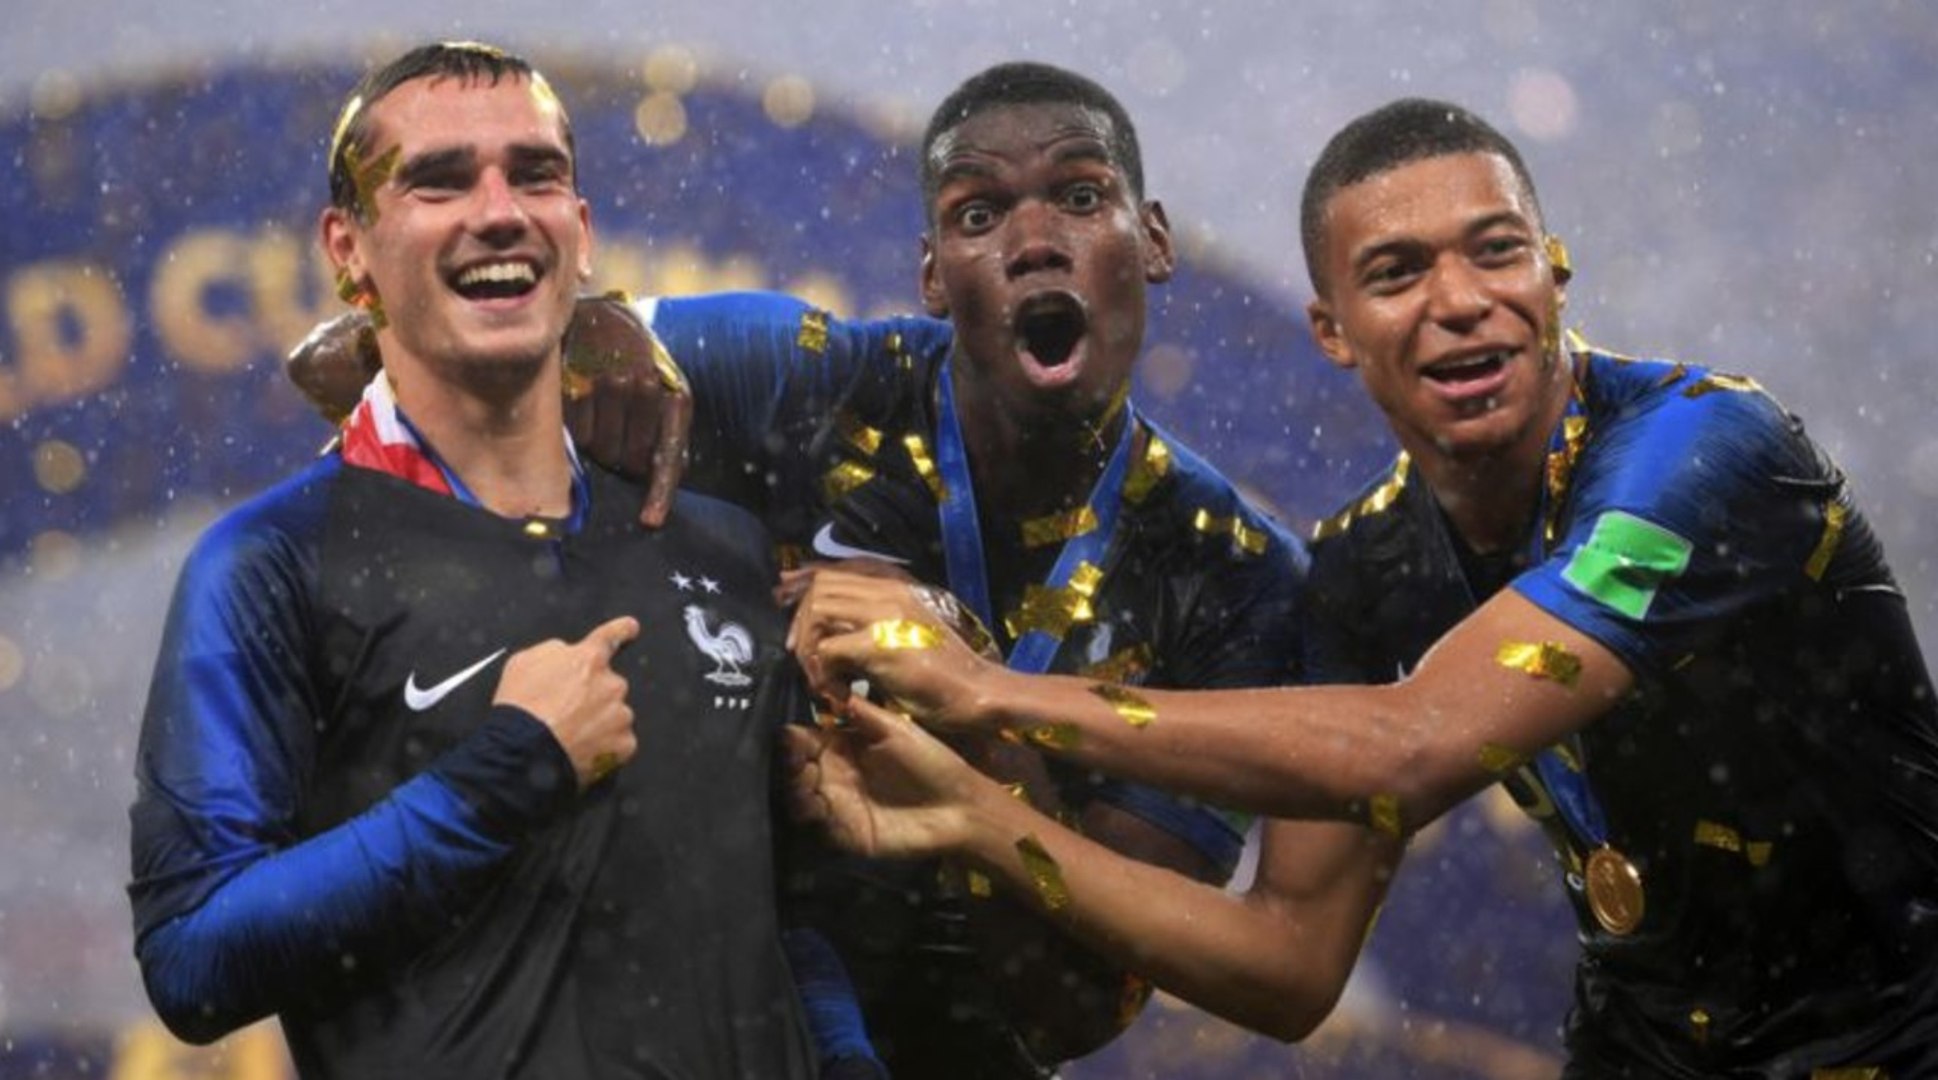 Le nouveau maillot Nike 2 étoiles de l'équipe de France déjà en vente...sur  Le Bon Coin et eBay - Vidéo Dailymotion